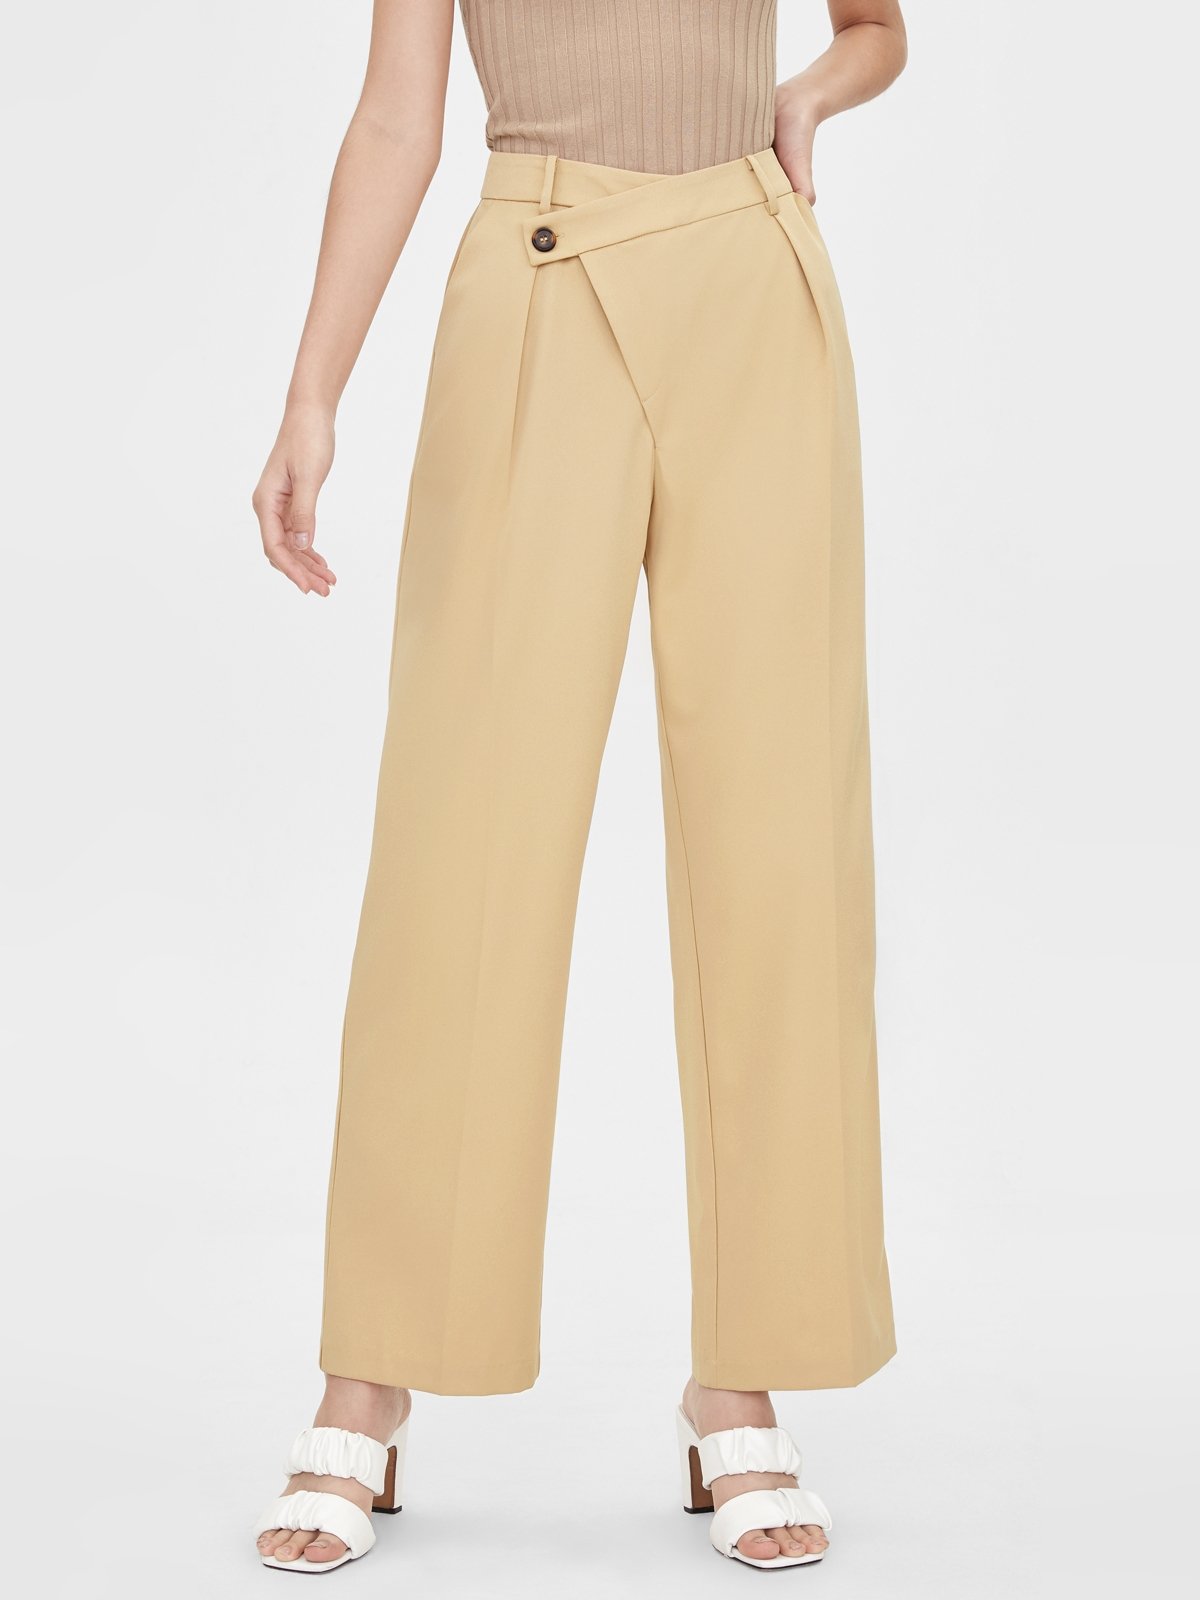 Side Asymmetrical Button Pants - Cream - Pomelo Fashion